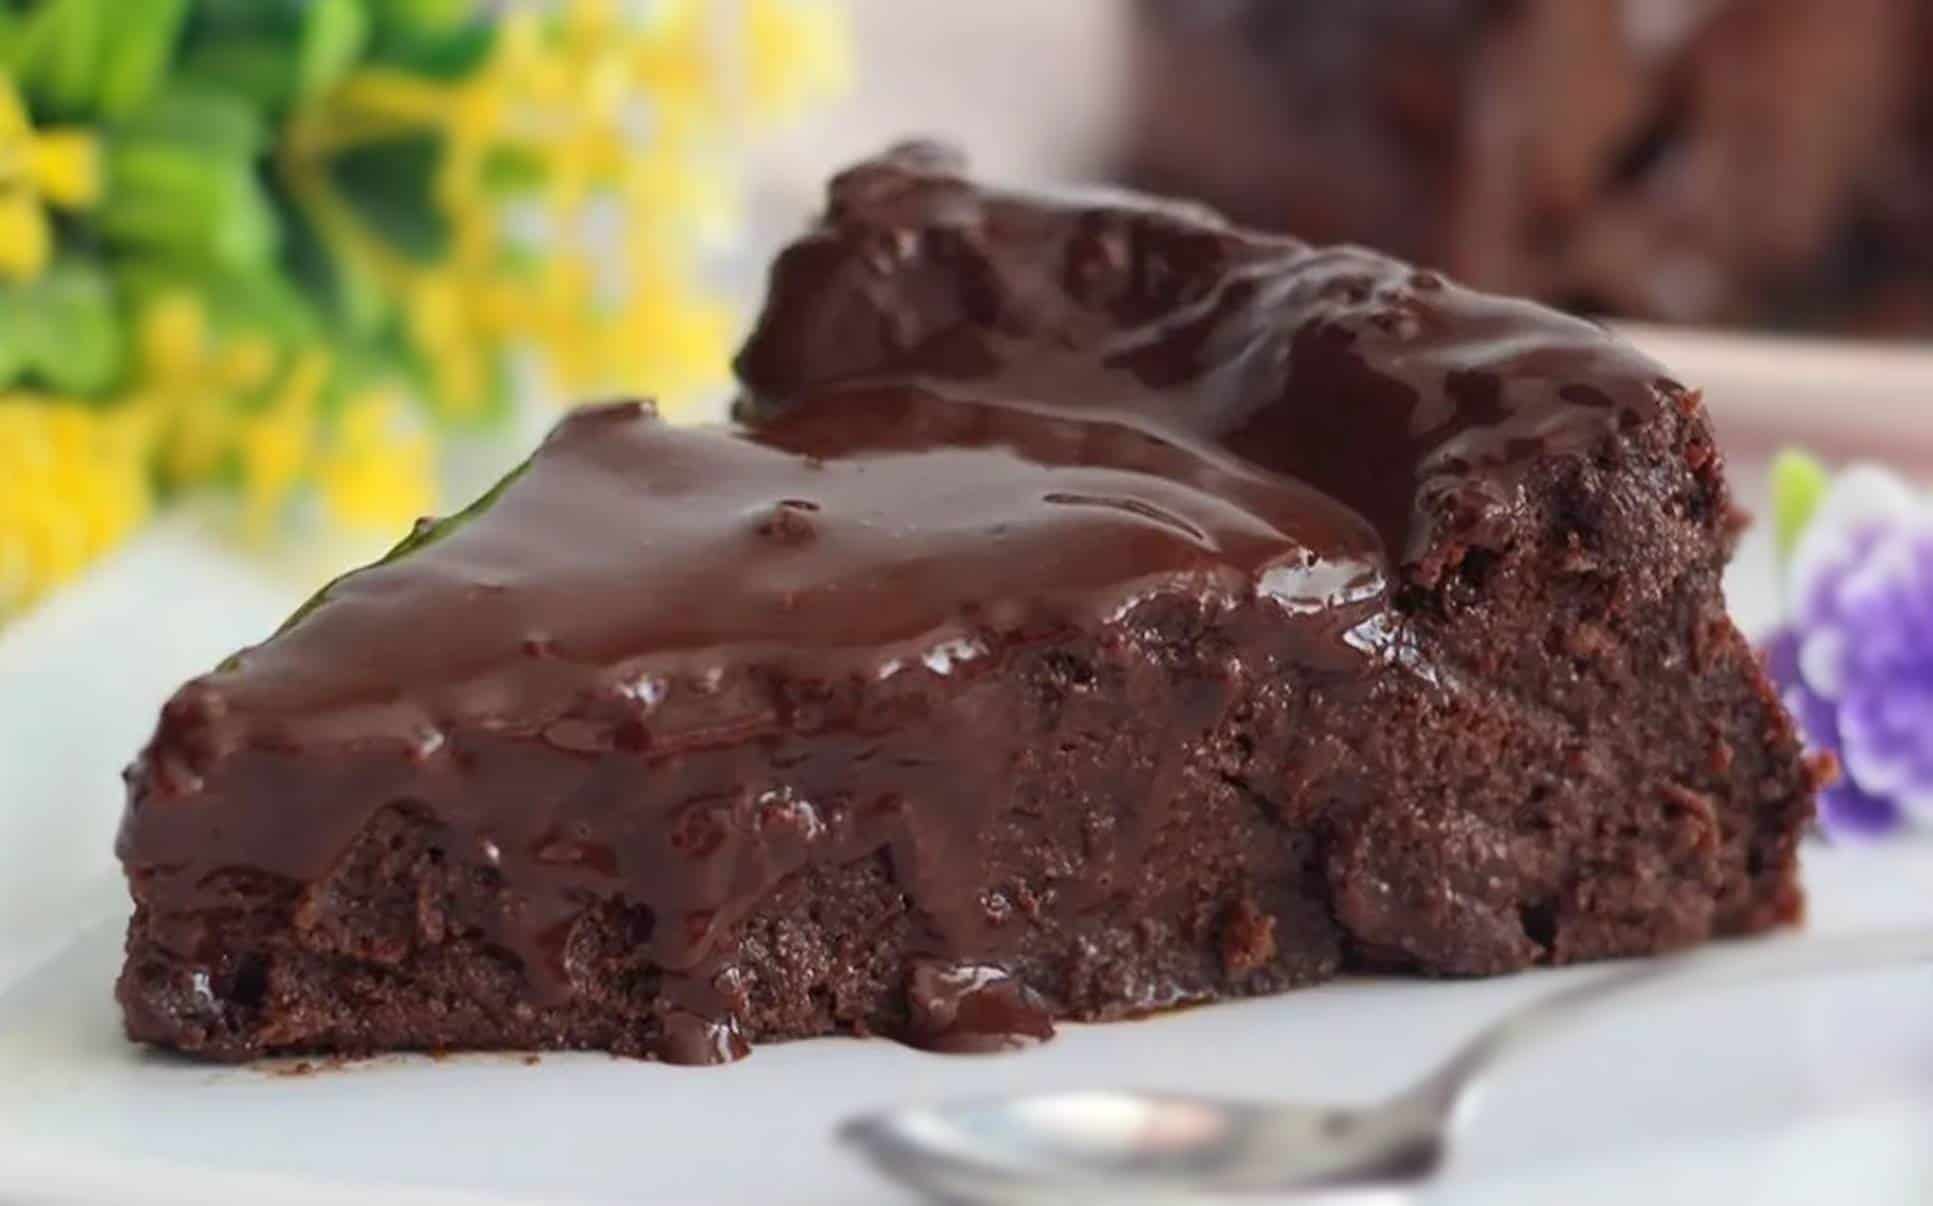 Aprenda a preparar um brownie de chocolate com apenas 3 ingredientes muito fácil!